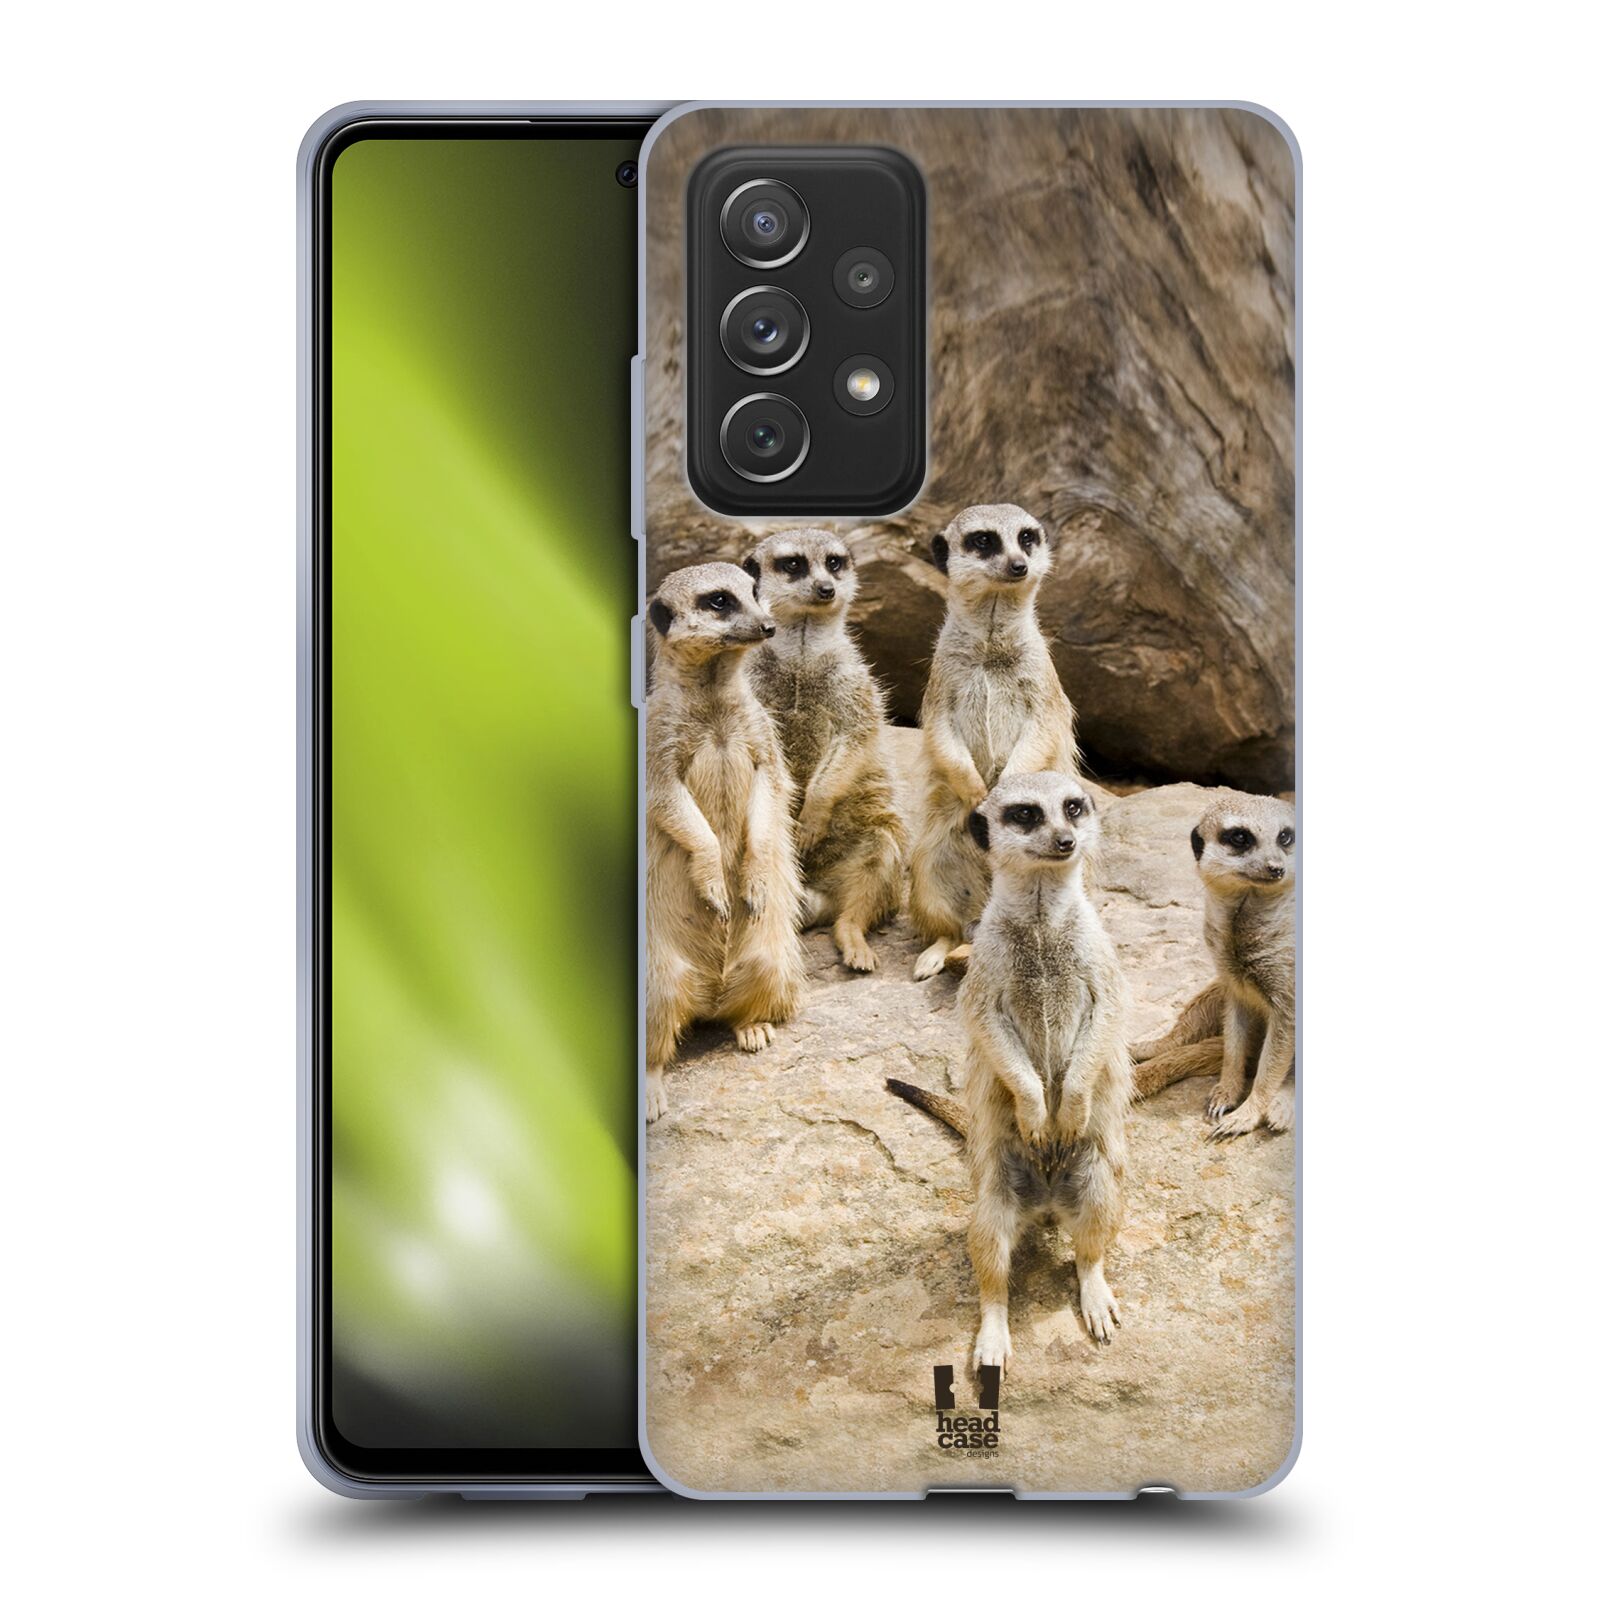 Plastový obal HEAD CASE na mobil Samsung Galaxy A72 / A72 5G vzor Divočina, Divoký život a zvířata foto SURIKATA